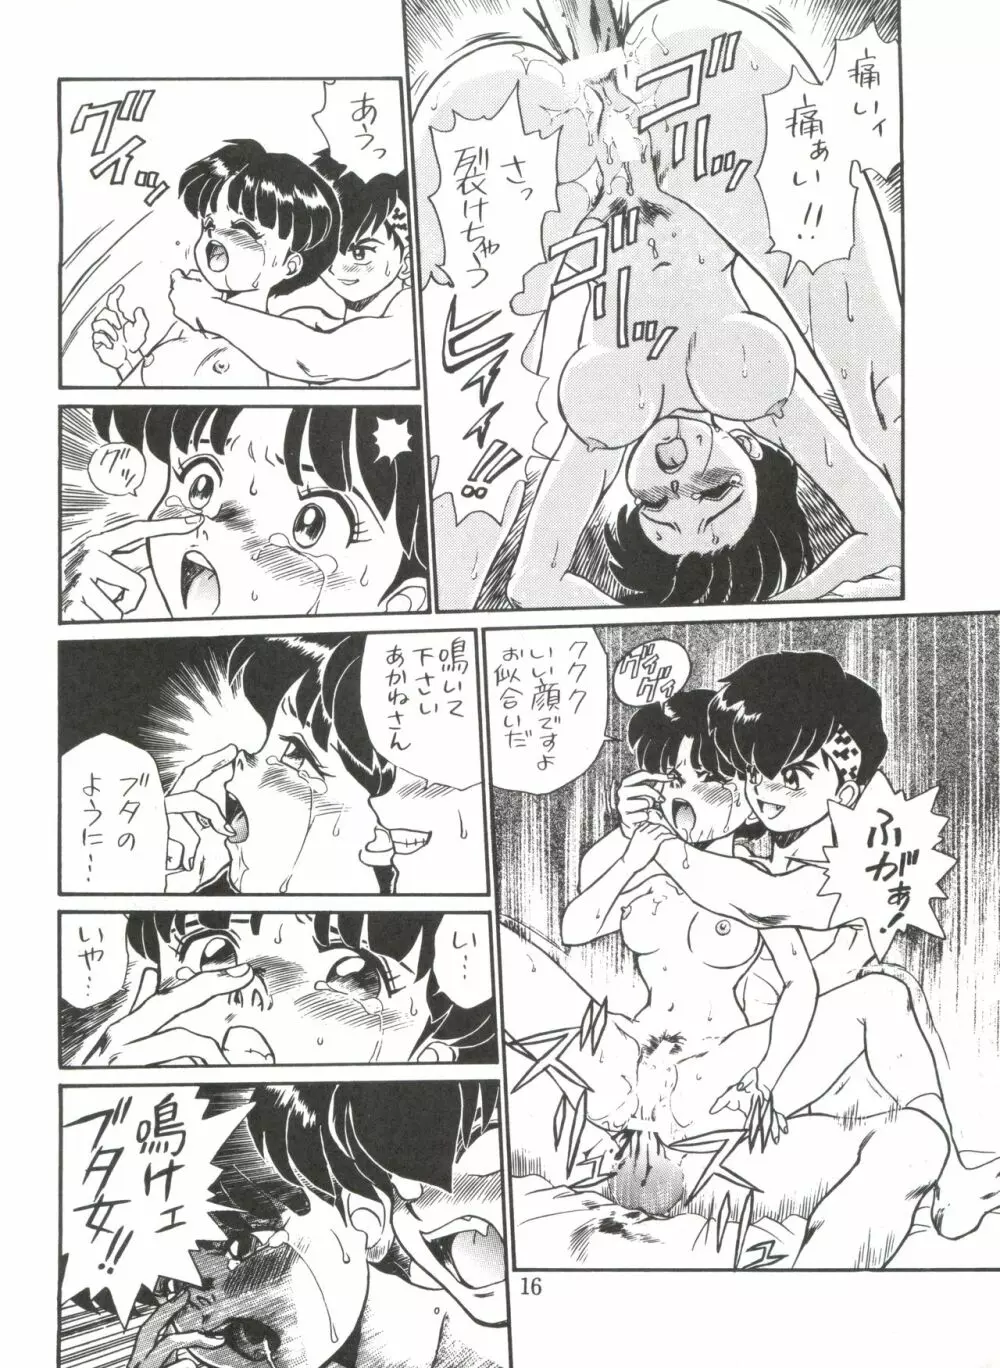 JoRiJoRi No.6 15ページ